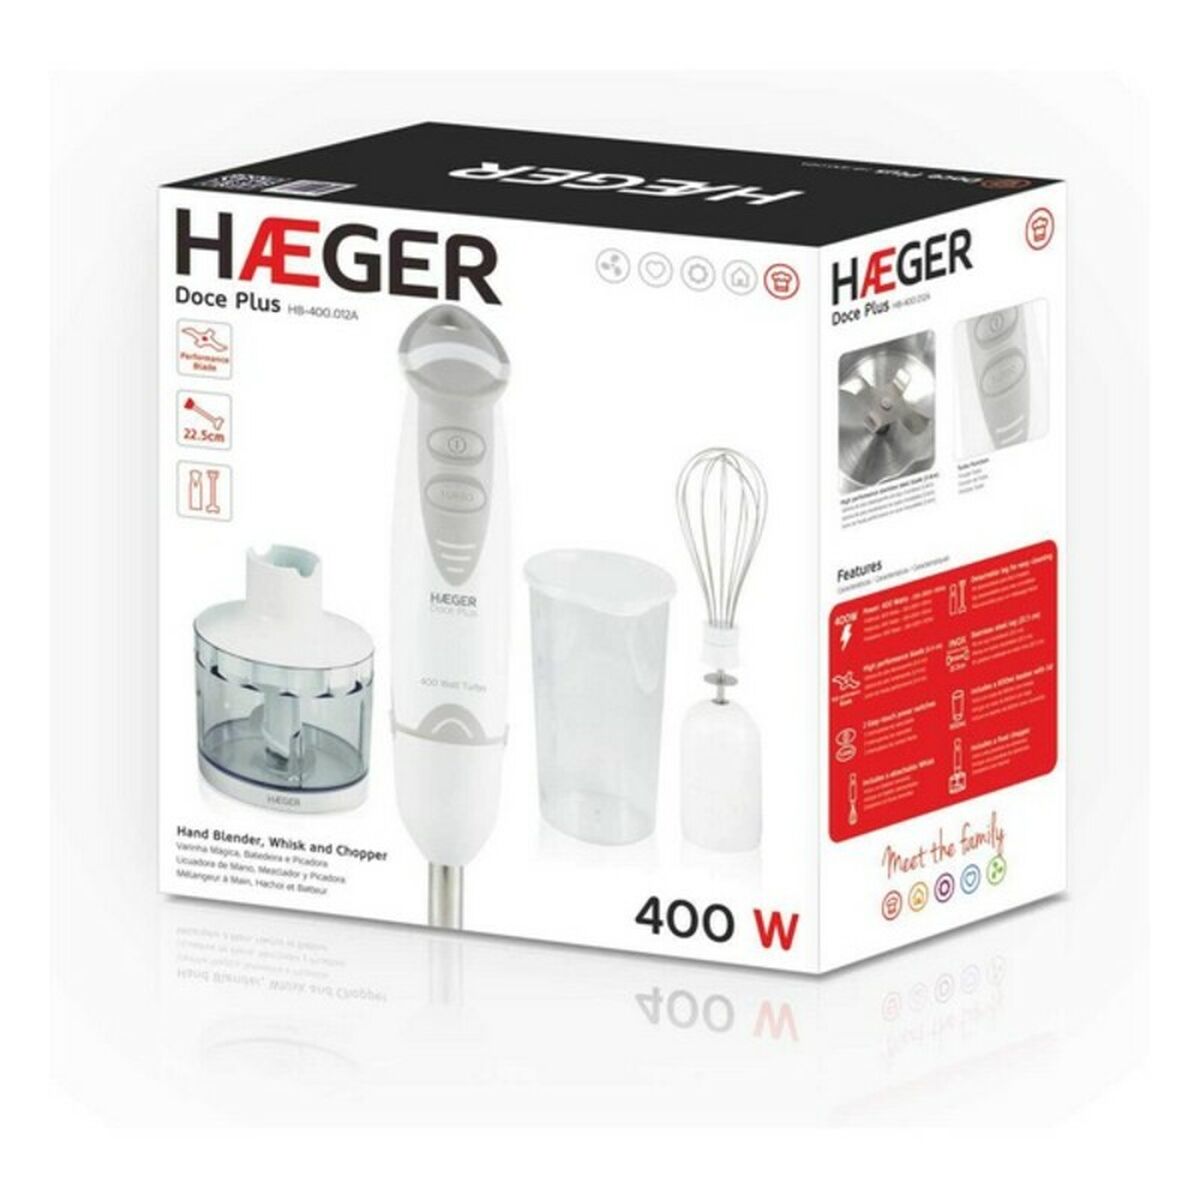 Hand-held Blender Haeger HB-400.012A White 400 W 400W